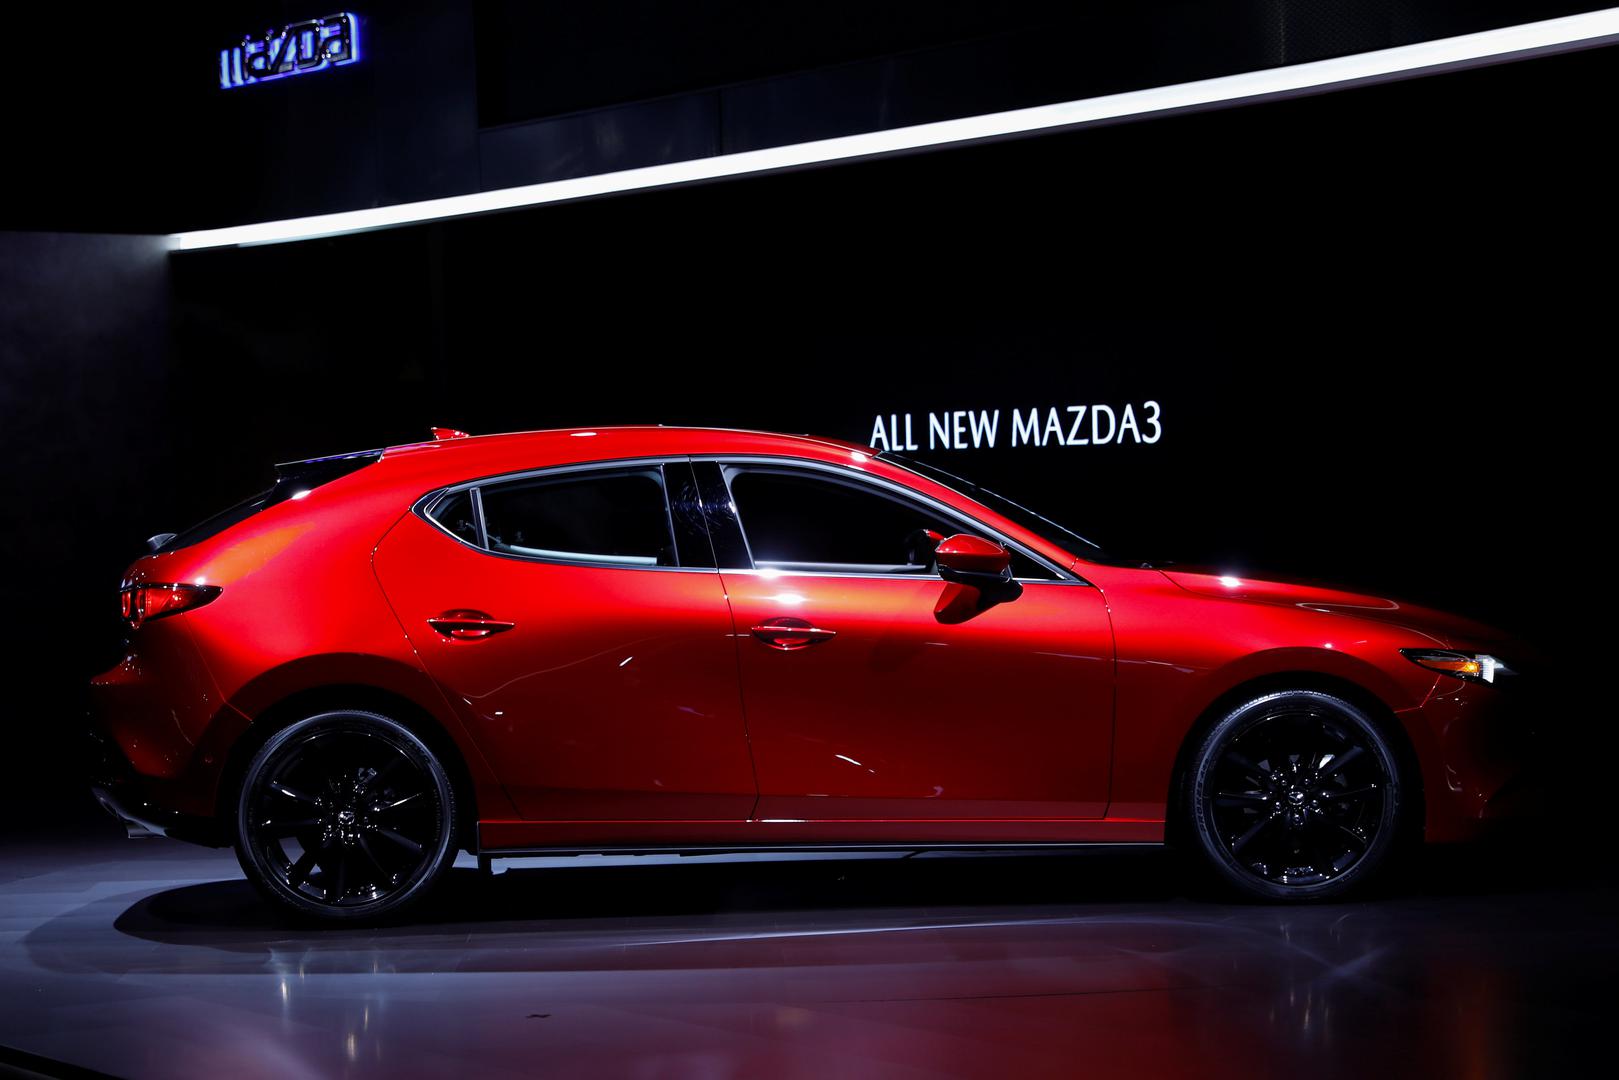 Mazda3 je u hatch varijanti s 447 cm jedan od najdužih modela Golf klase, a sedan je sada prava “mala šestica”